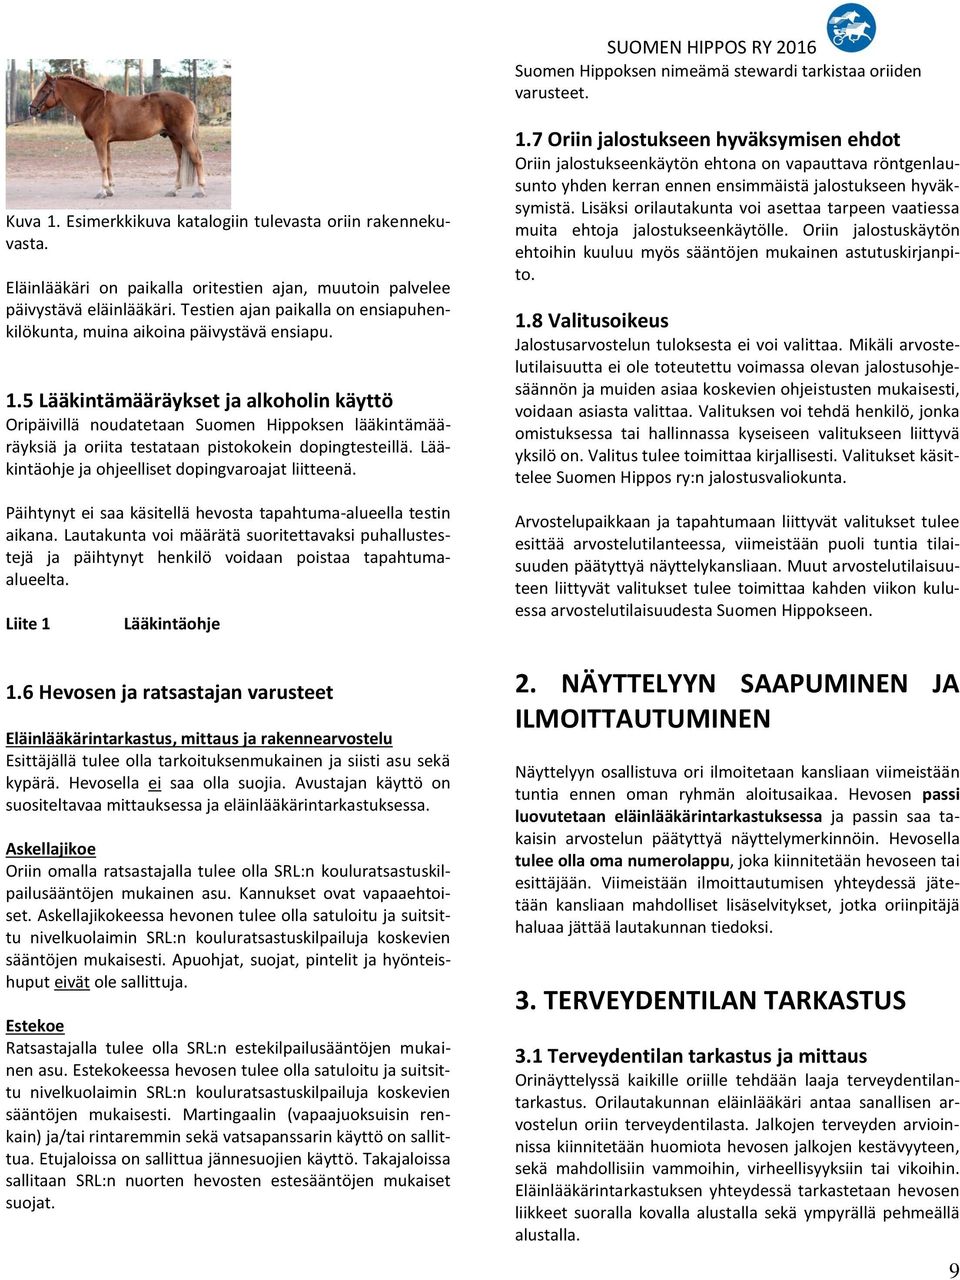 5 Lääkintämääräykset ja alkoholin käyttö Oripäivillä noudatetaan Suomen Hippoksen lääkintämääräyksiä ja oriita testataan pistokokein dopingtesteillä.